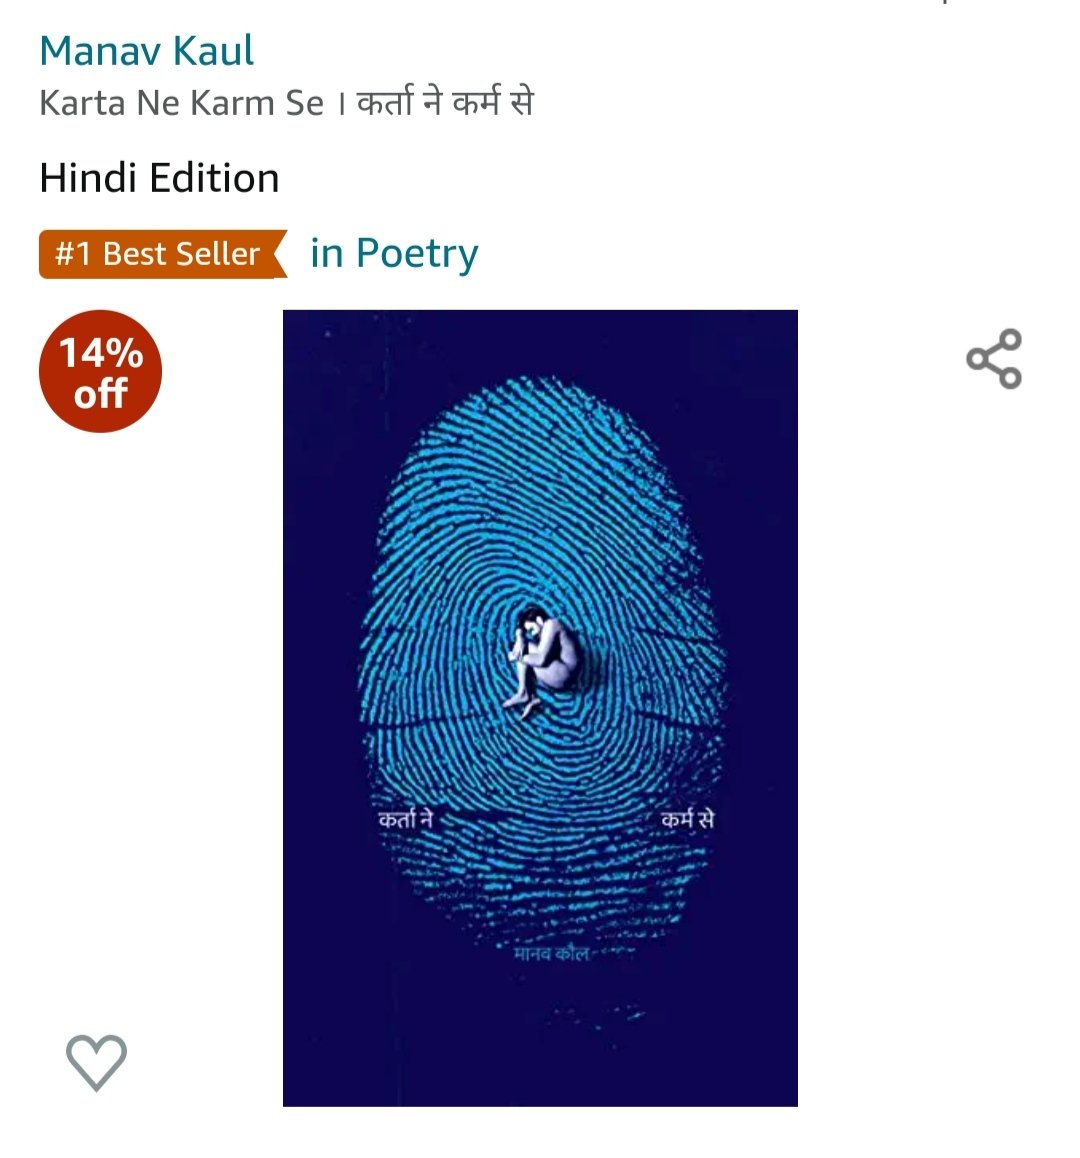 'कर्ता ने कर्म से' अमेज़न पर कविता संग्रह की बेस्ट सेलर कैटेगरी में नंबर एक पर काबिज़ हो गई है।

आपके इस विश्वास और प्यार से हम अभिभूत है।
यूँ ही प्यार बनाये रखिये।

#Hindyugm #NayiWaliHindi #manavkaul #poetrycollections #kartanekarmse  #kartanekarmse